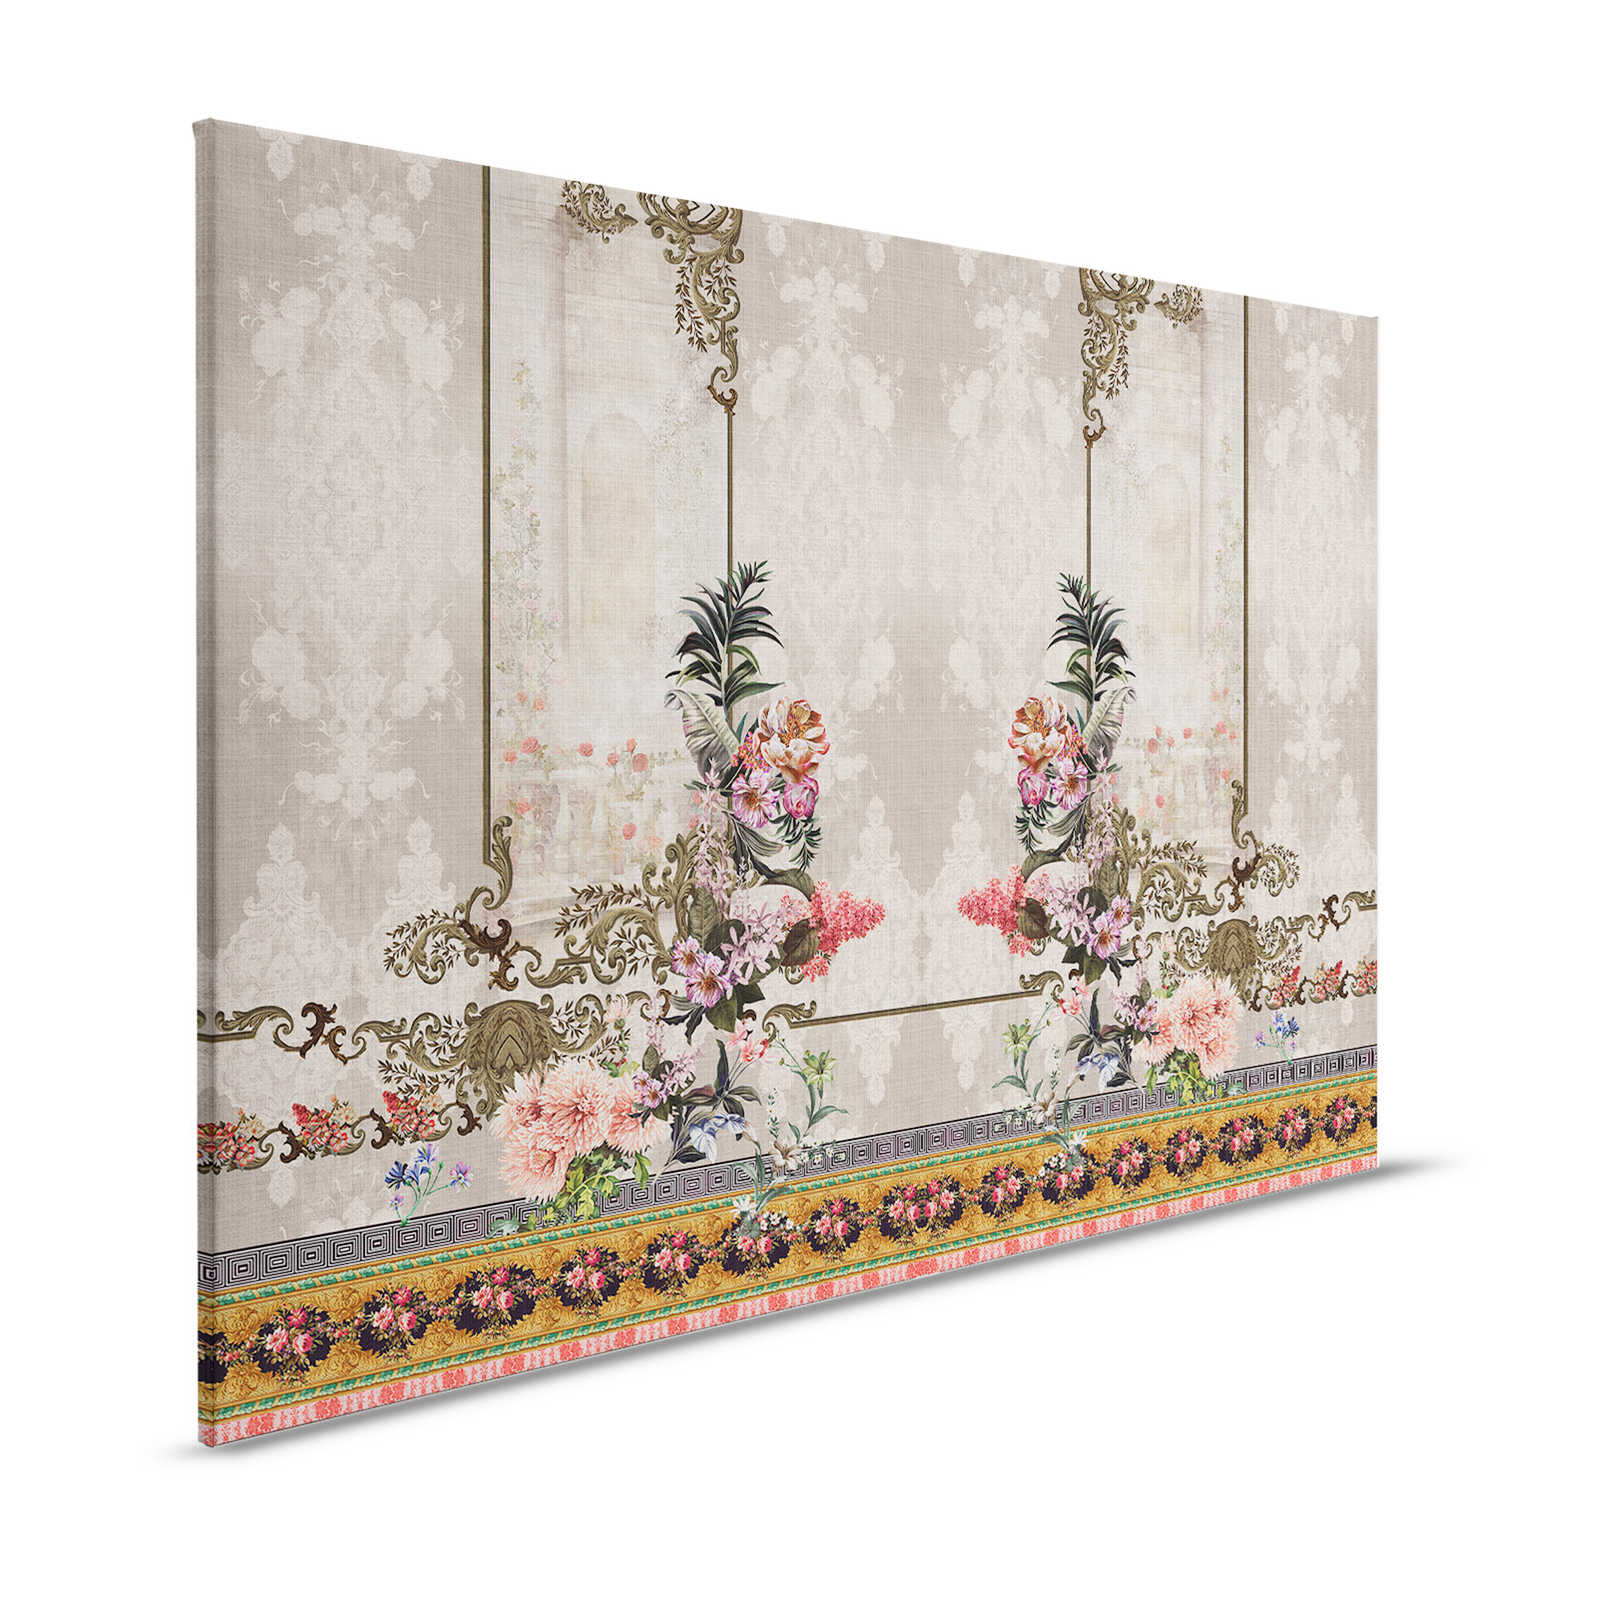 Oriental Garden 1 - Canvas schilderij Muurdecoratie Bloemrijk & randen - 1.20 m x 0.80 m
